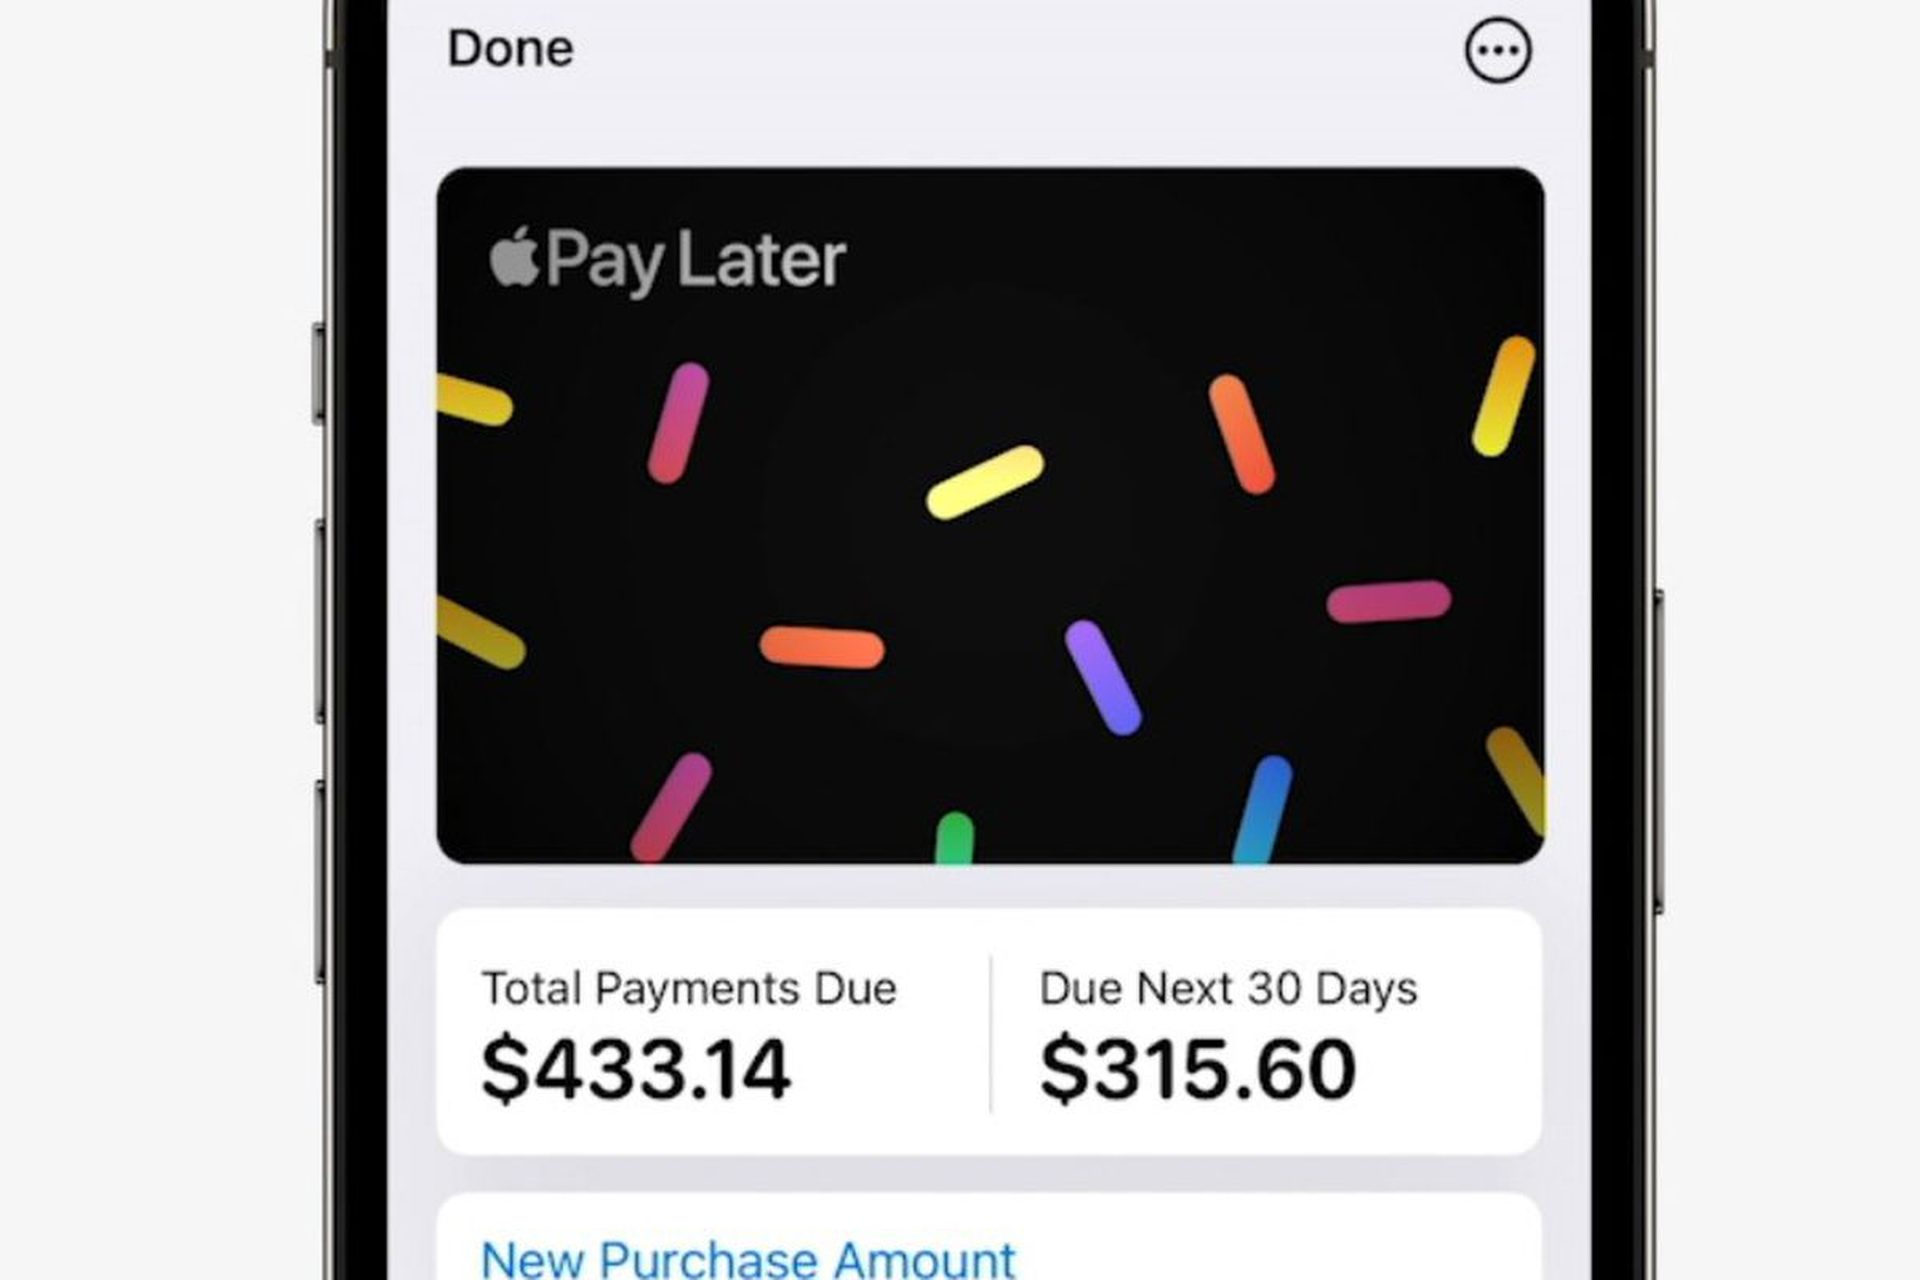 Acquista ora, paga dopo: Apple Pay Later